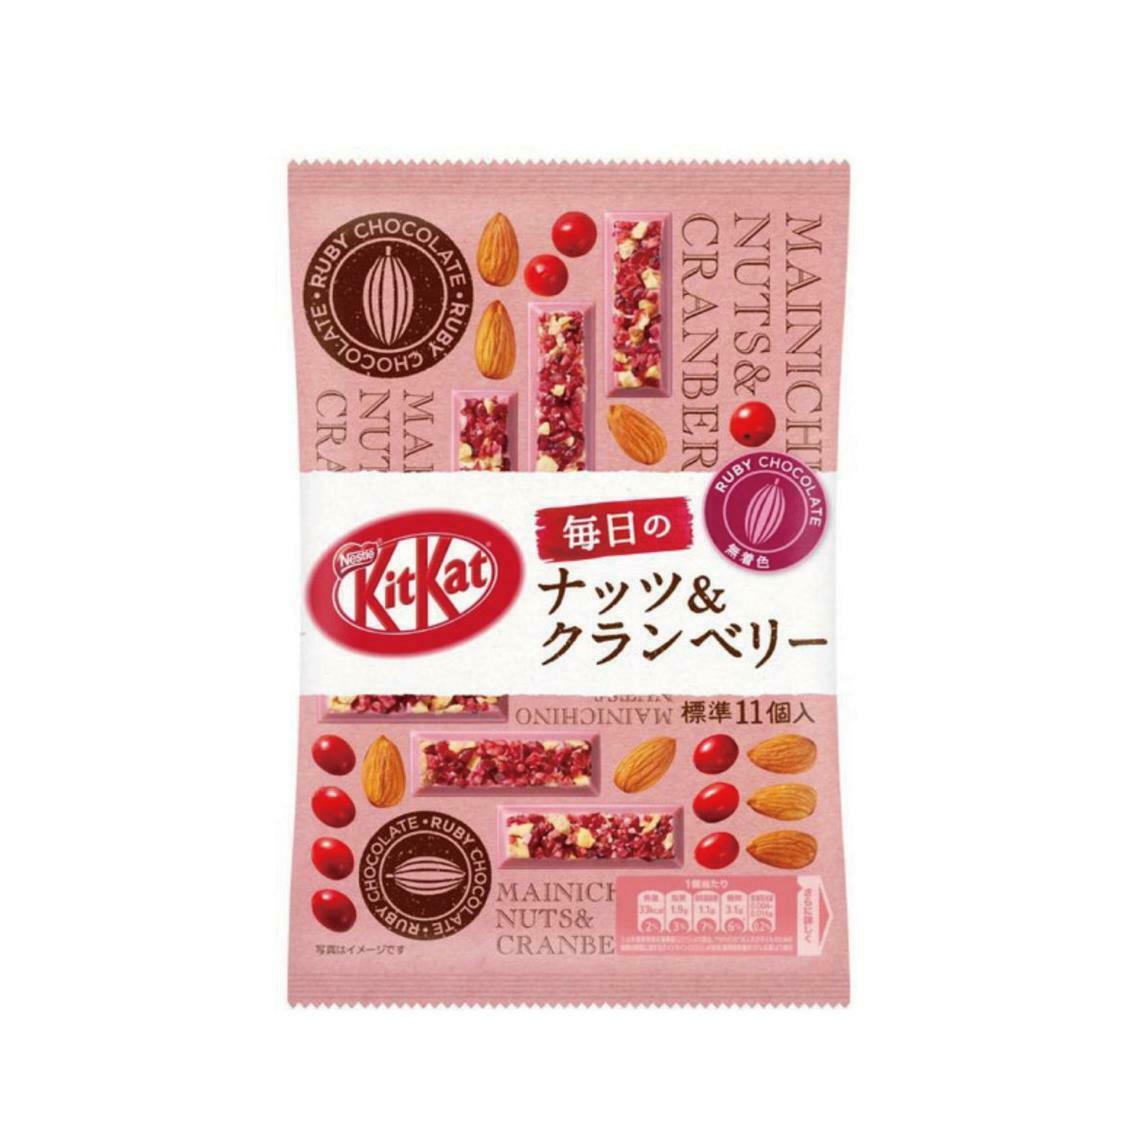 Nestlé Japanese Kit Kat, Nuts And Cranberry